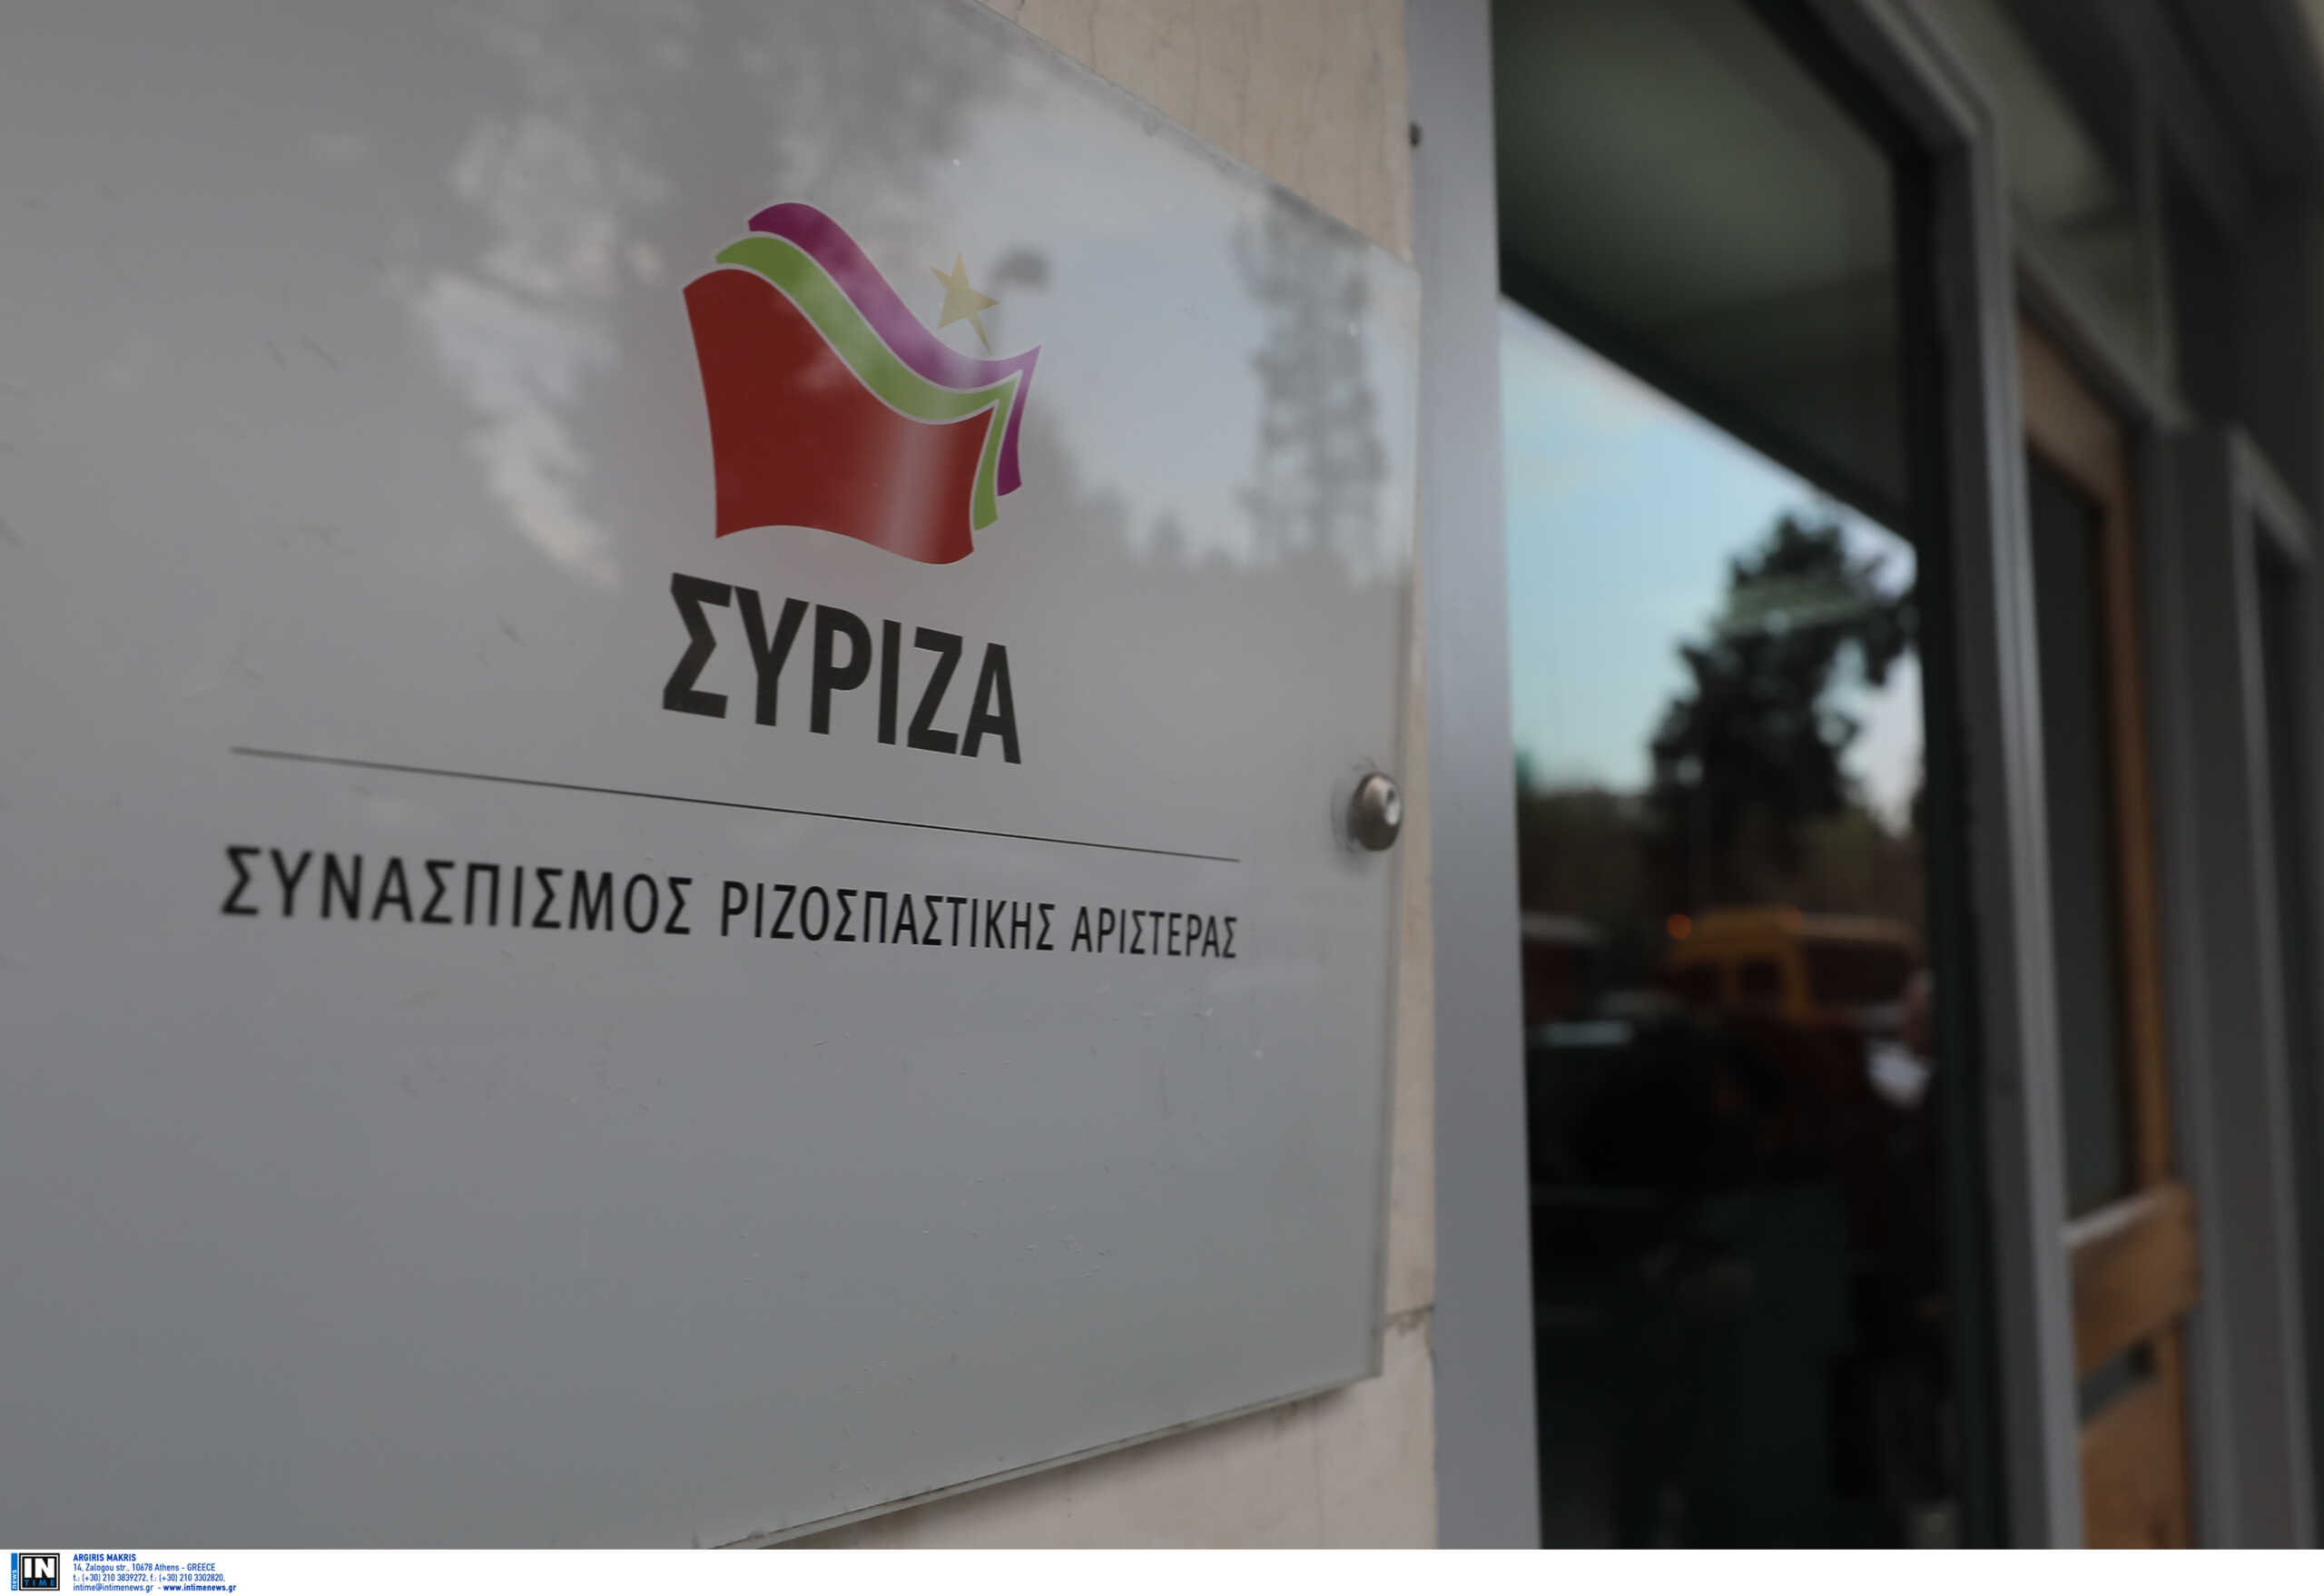 Ερωτικό σκάνδαλο οδηγεί στα δικαστήρια στελέχη του ΣΥΡΙΖΑ